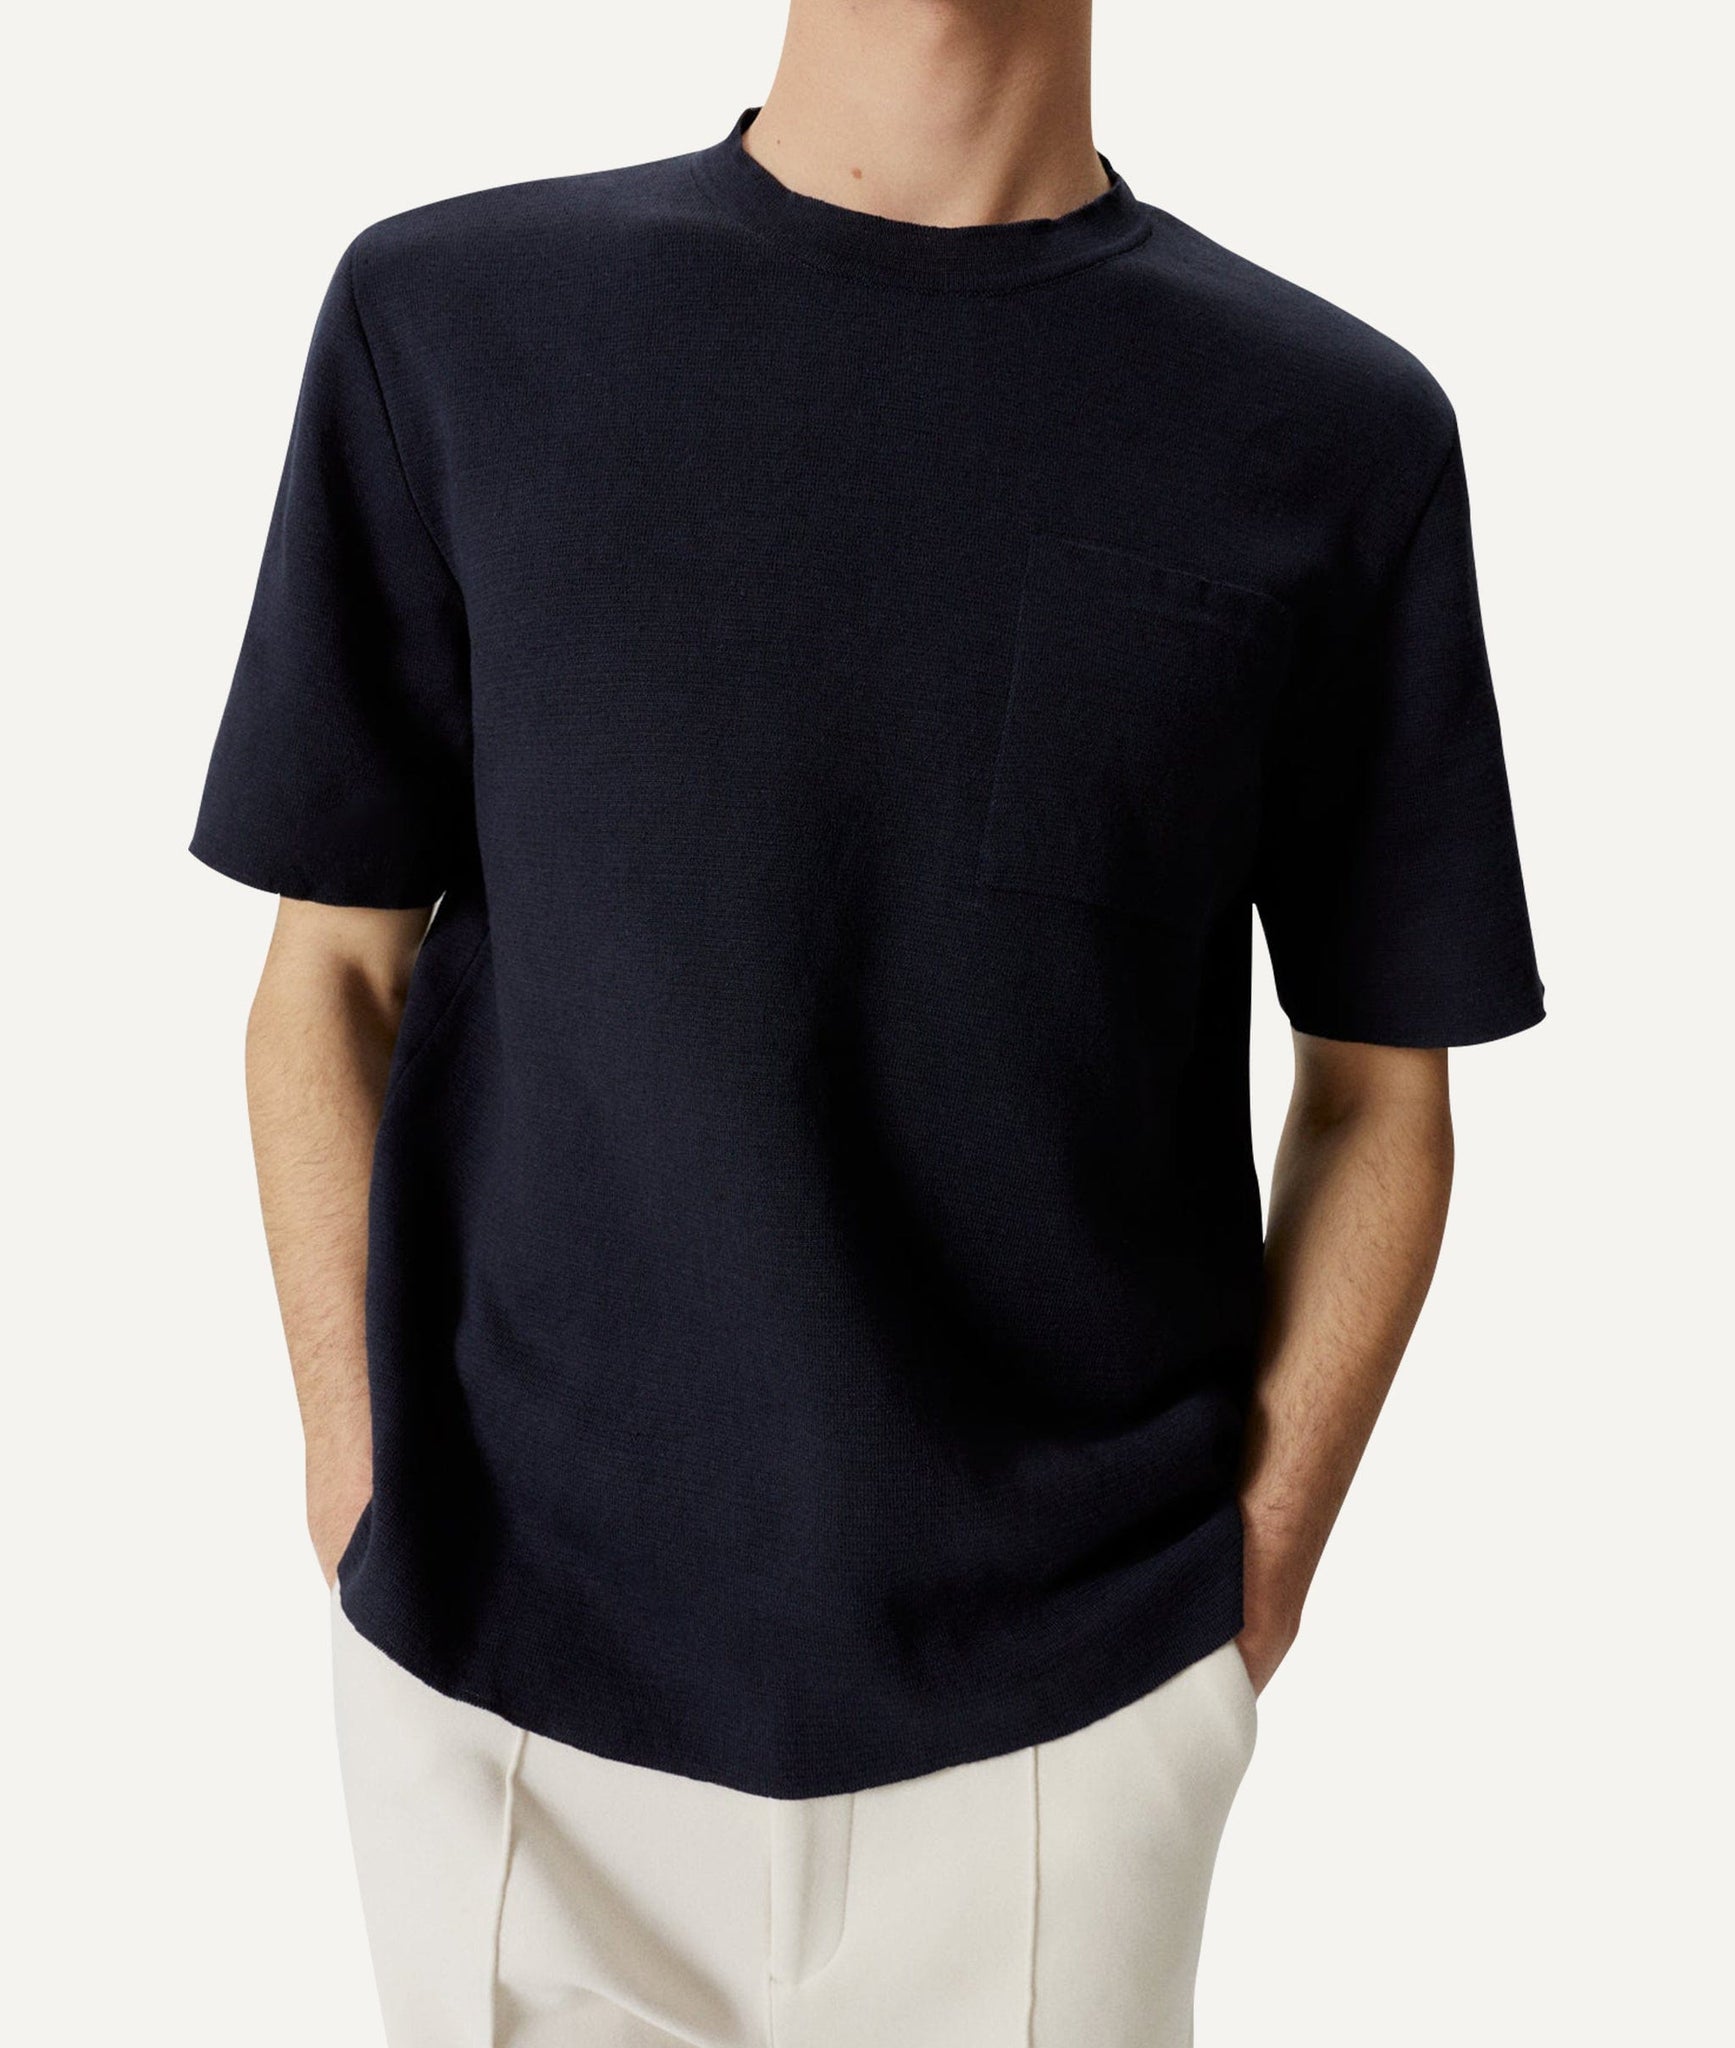 Das Leinen-Baumwoll-T-Shirt im Relaxed-Fit